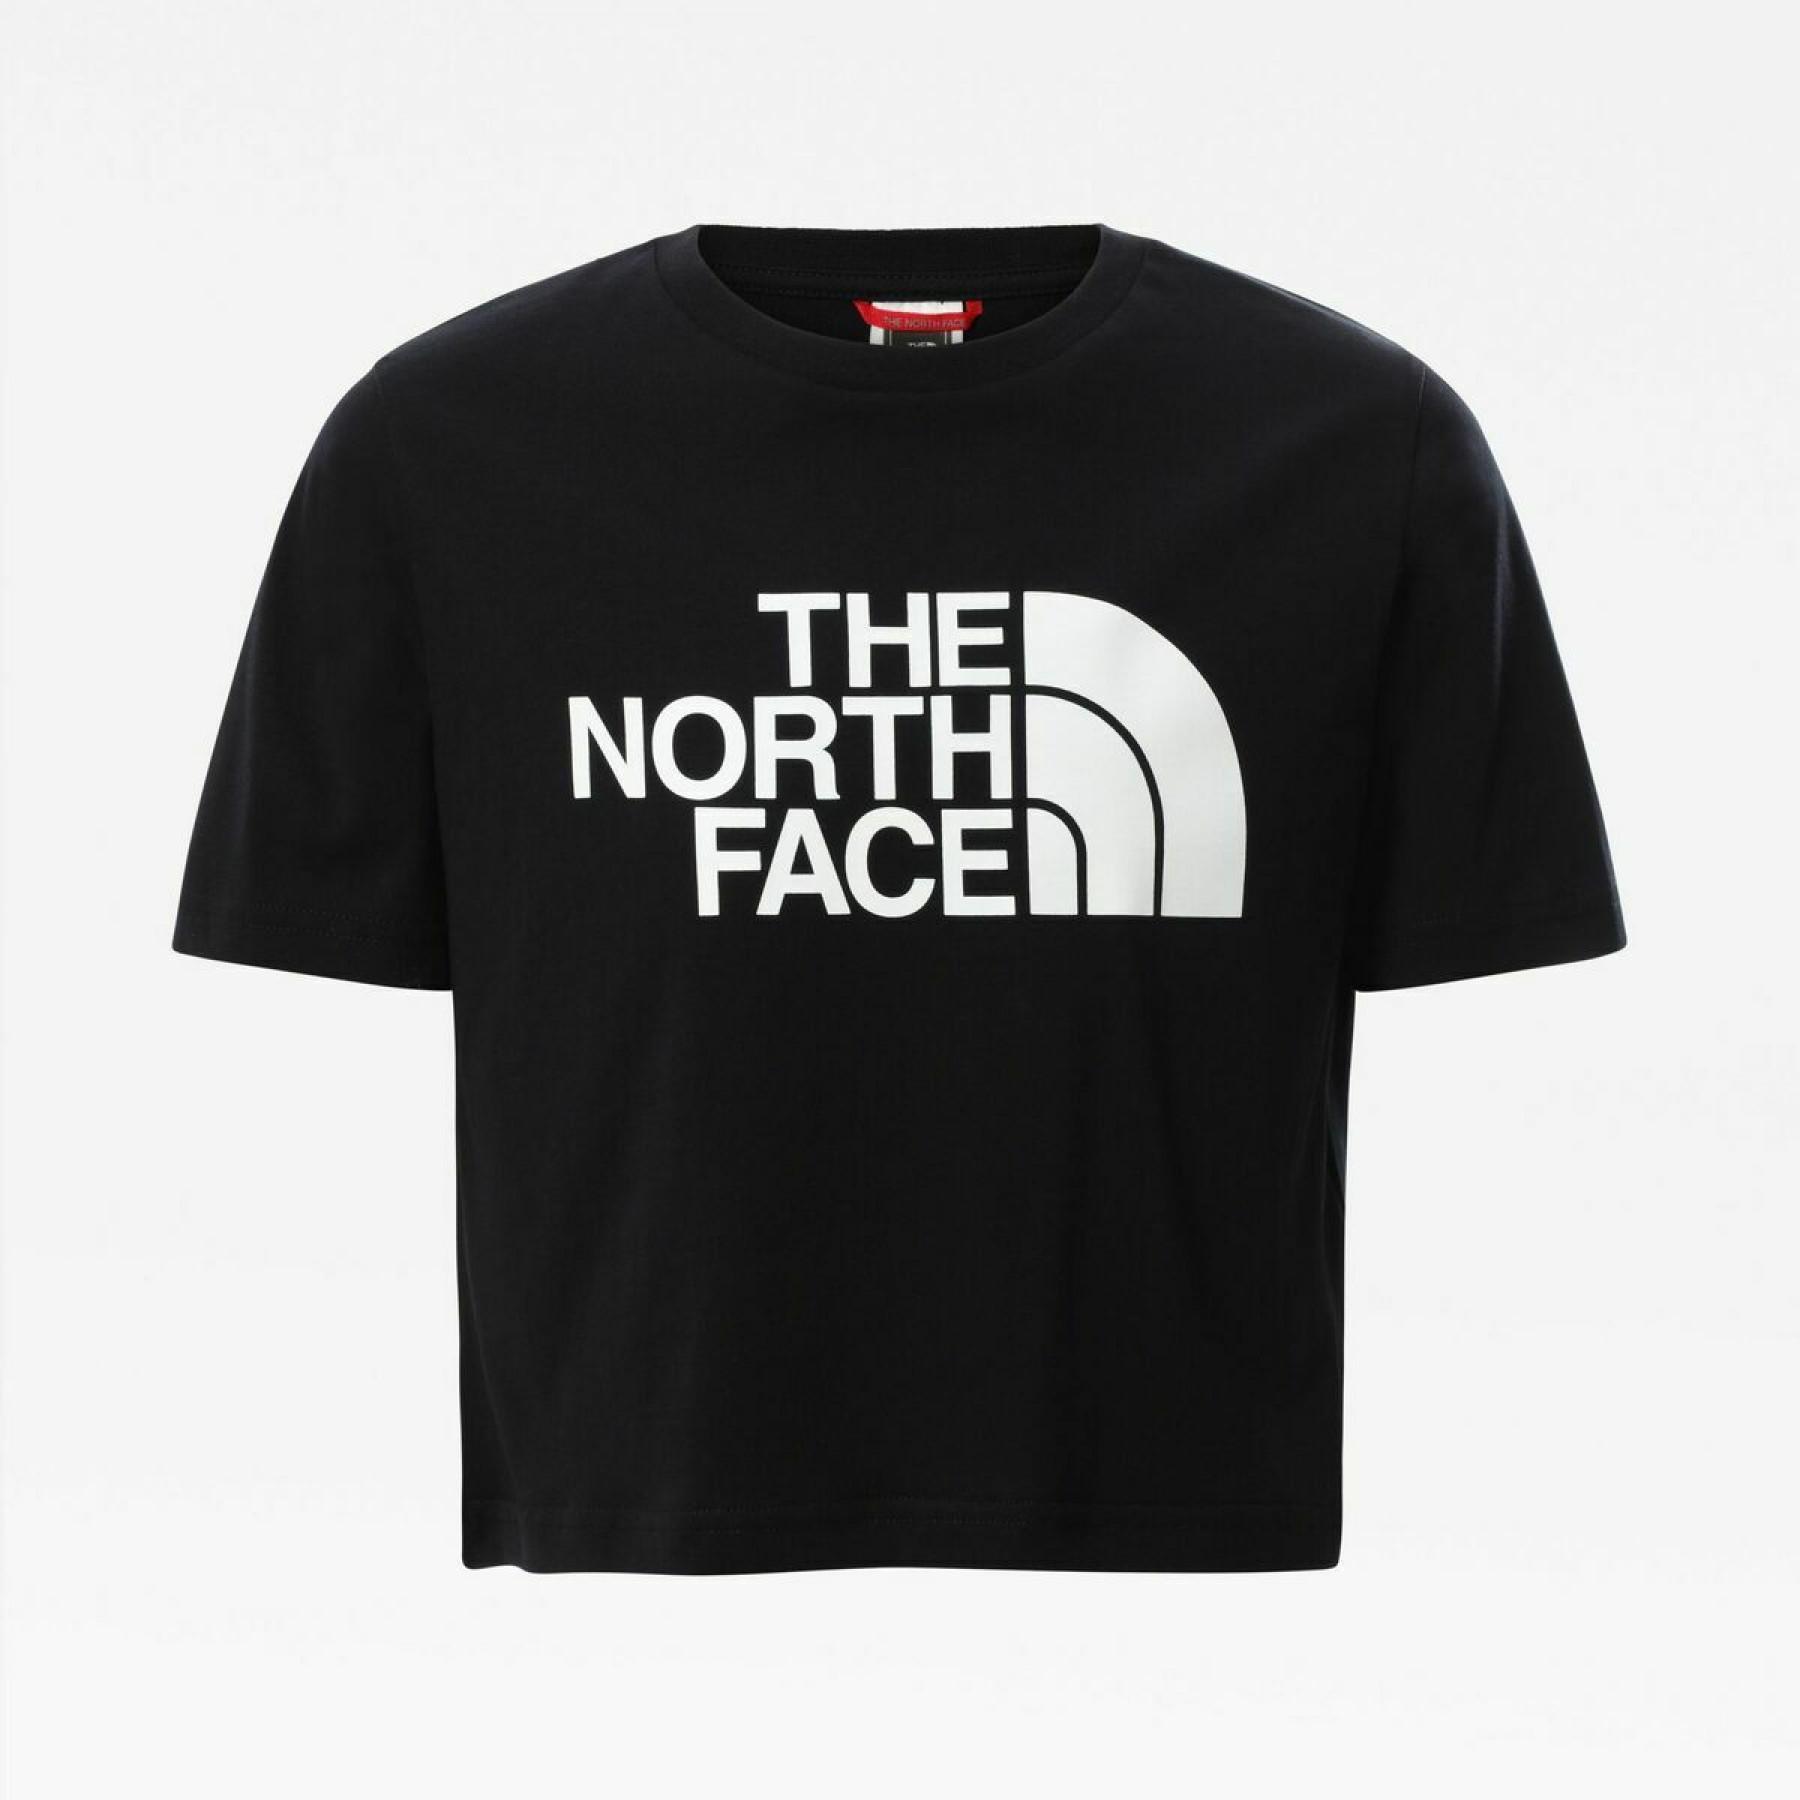 T-shirt de rapariga para a colheita The North Face Easy